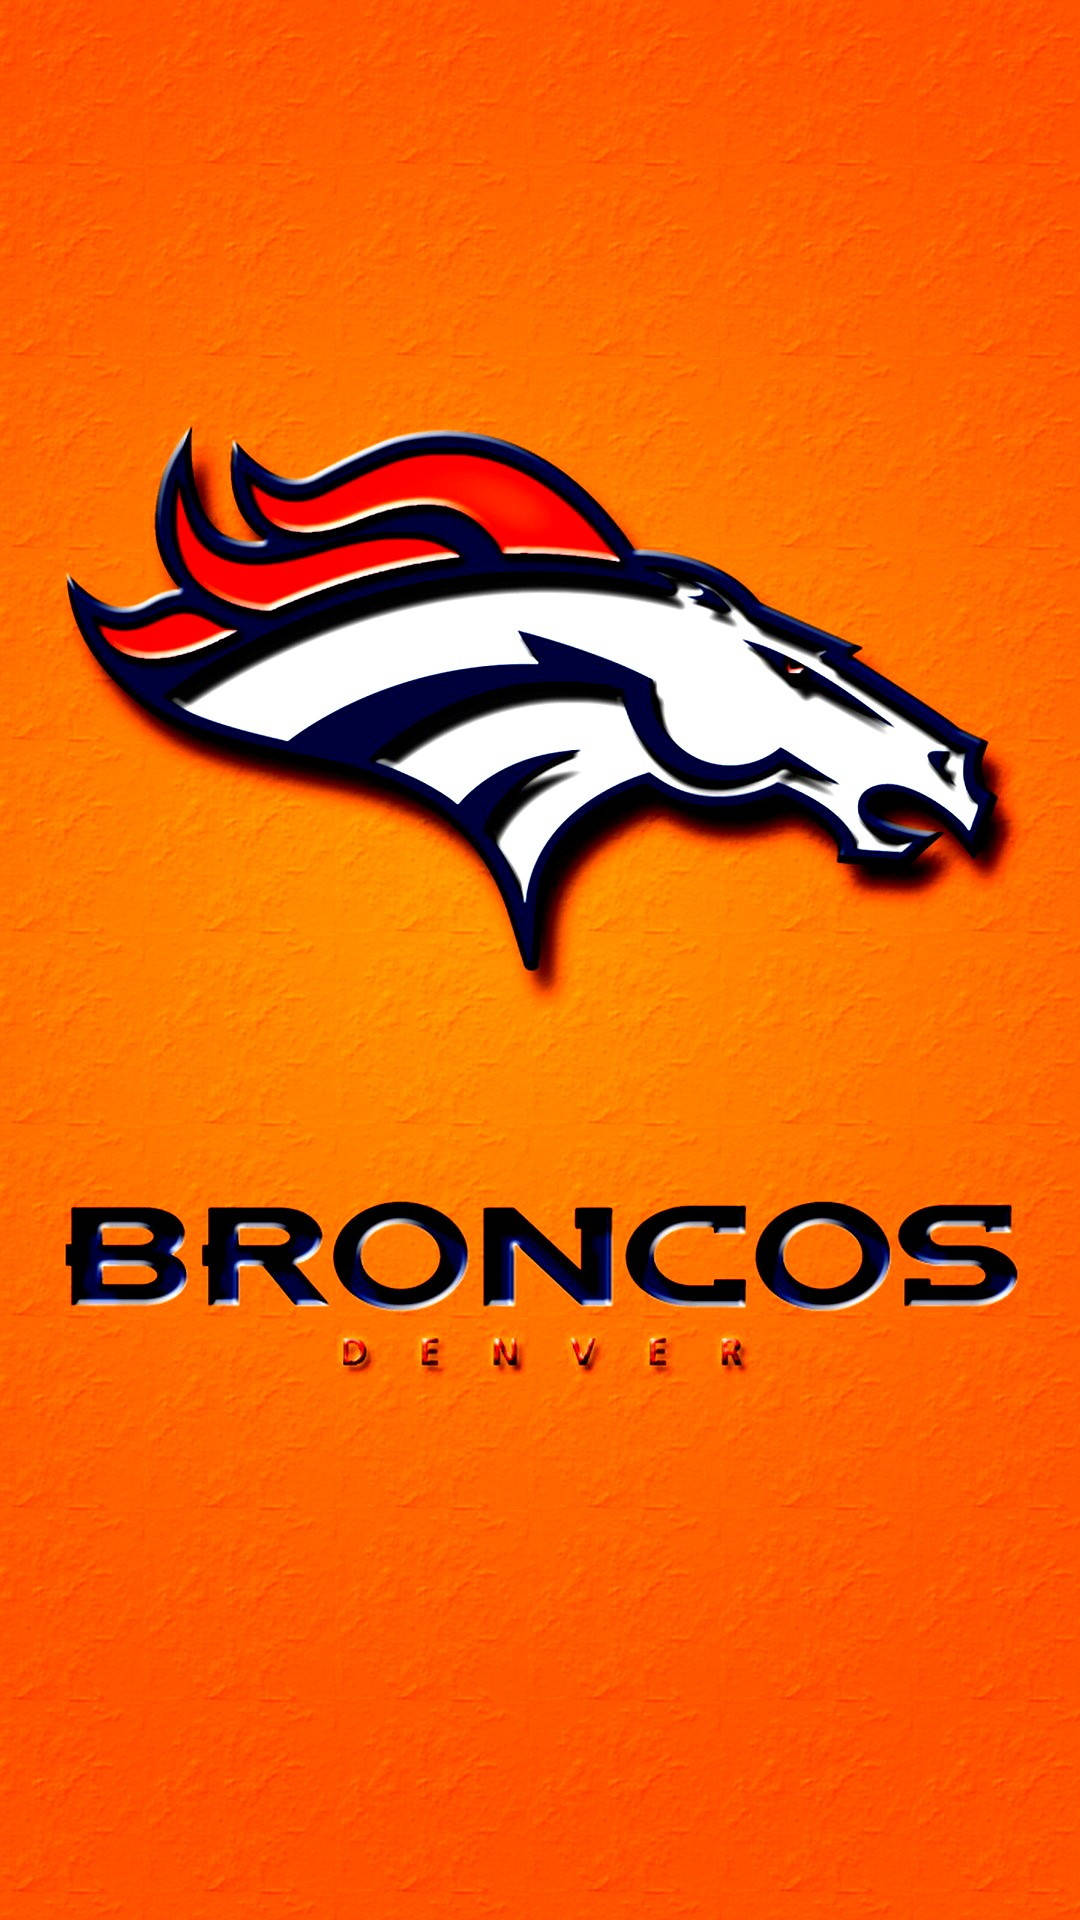 Attachment for Denver Broncos football team animated logo for iPhone 6  wallpaper  Denver broncos wallpaper Broncos wallpaper Denver broncos logo